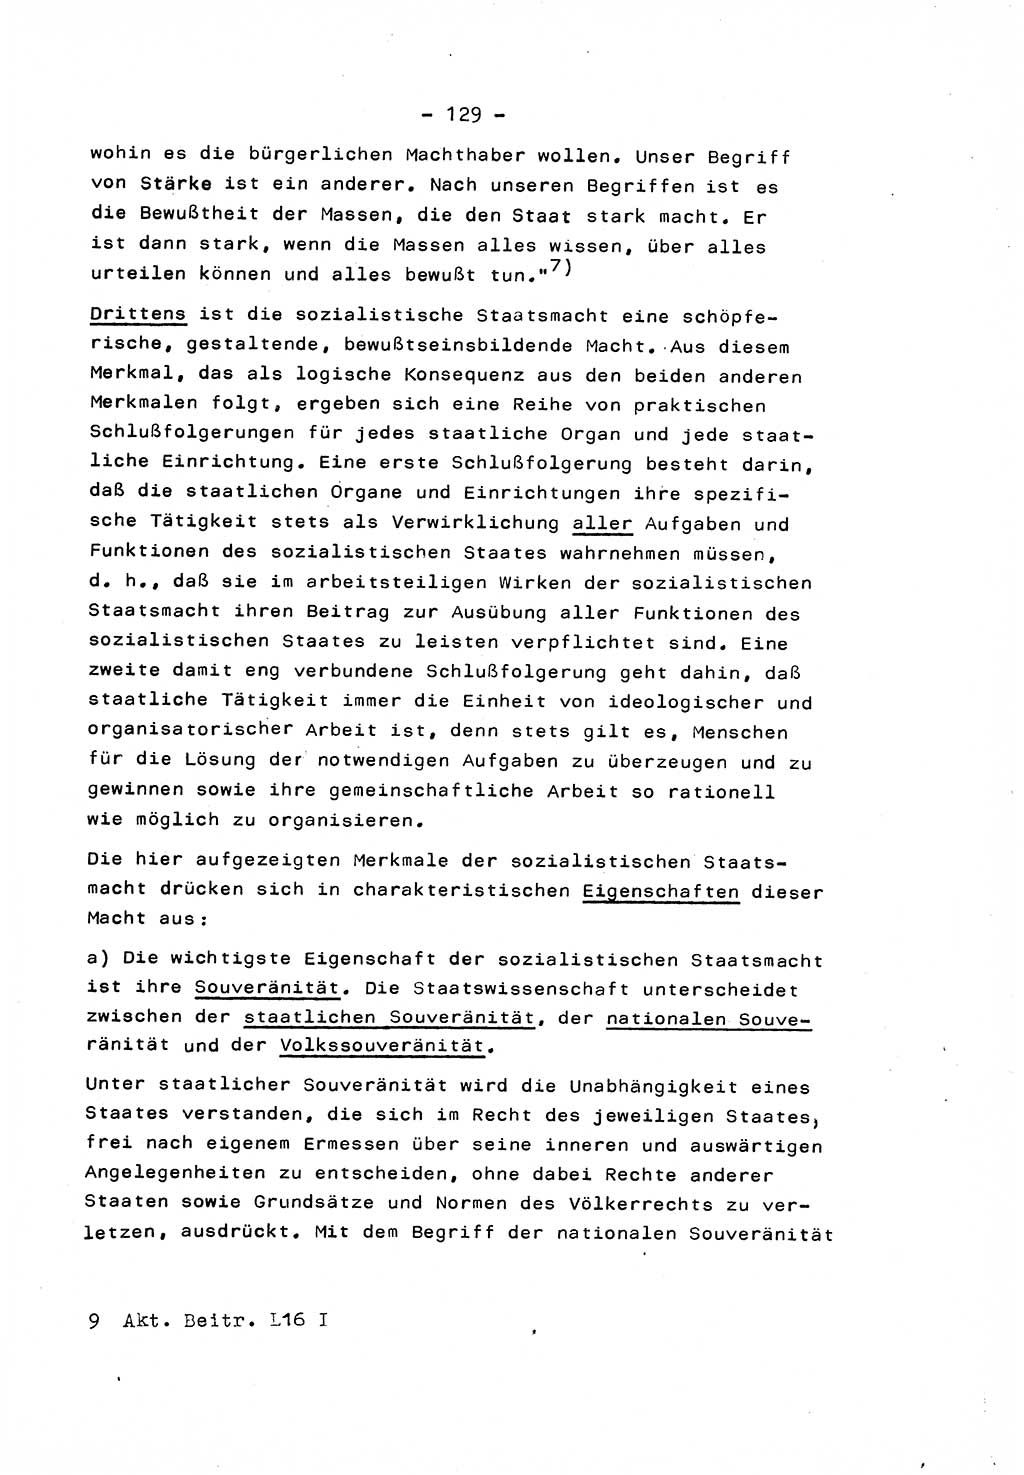 Marxistisch-leninistische Staats- und Rechtstheorie [Deutsche Demokratische Republik (DDR)] 1975, Seite 129 (ML St.-R.-Th. DDR 1975, S. 129)